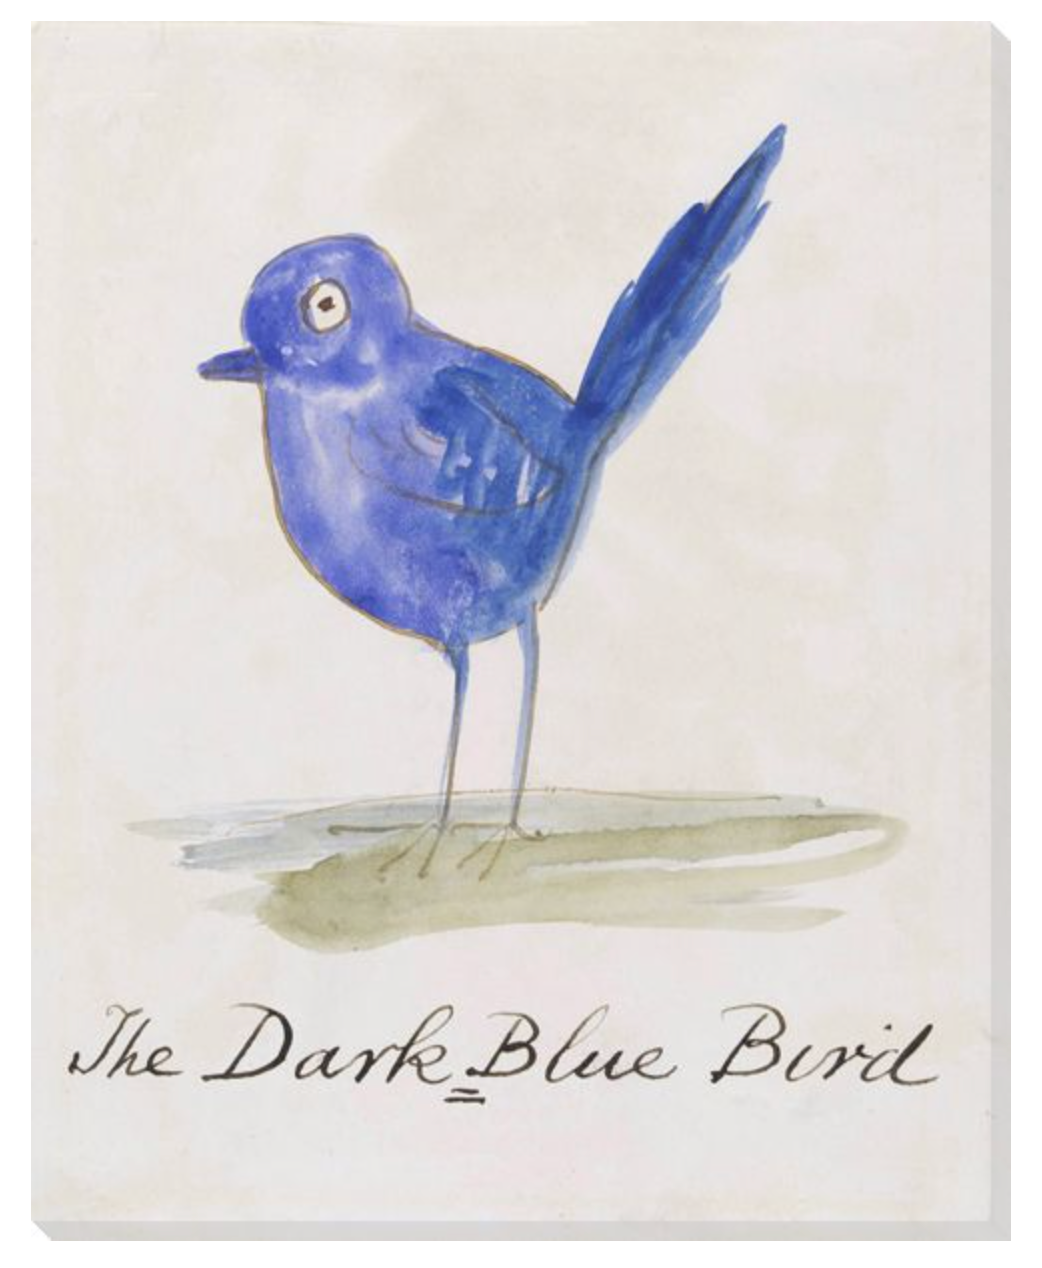 THE DARK BLUE BIRD